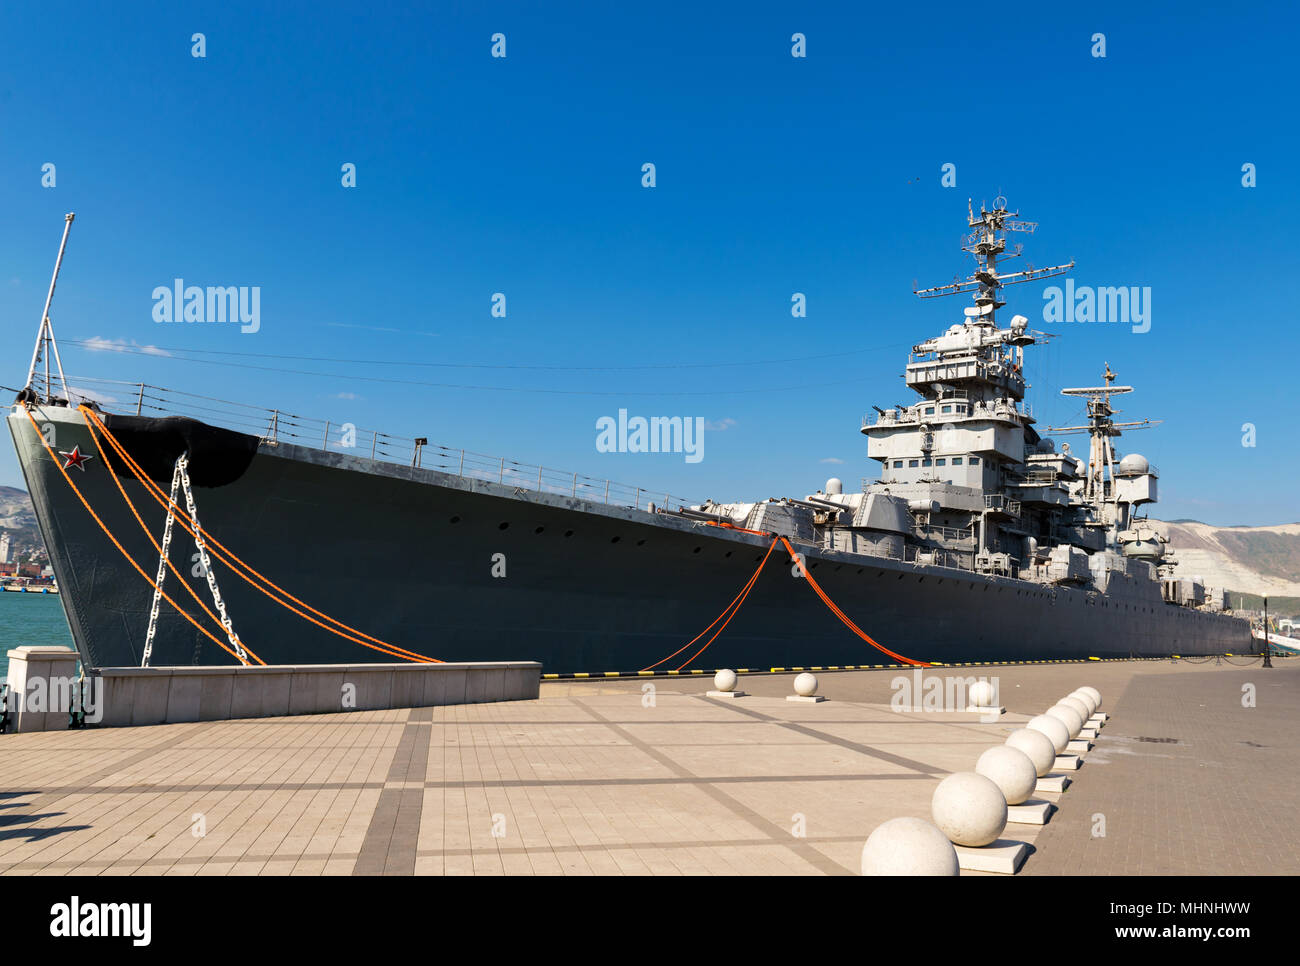 Noworossijsk, Russland - 22. August 2015: Das Schiff - museum Cruiser Mikhail Kutuzov vertäut an der Pier im Hafen von Noworossijsk Stockfoto